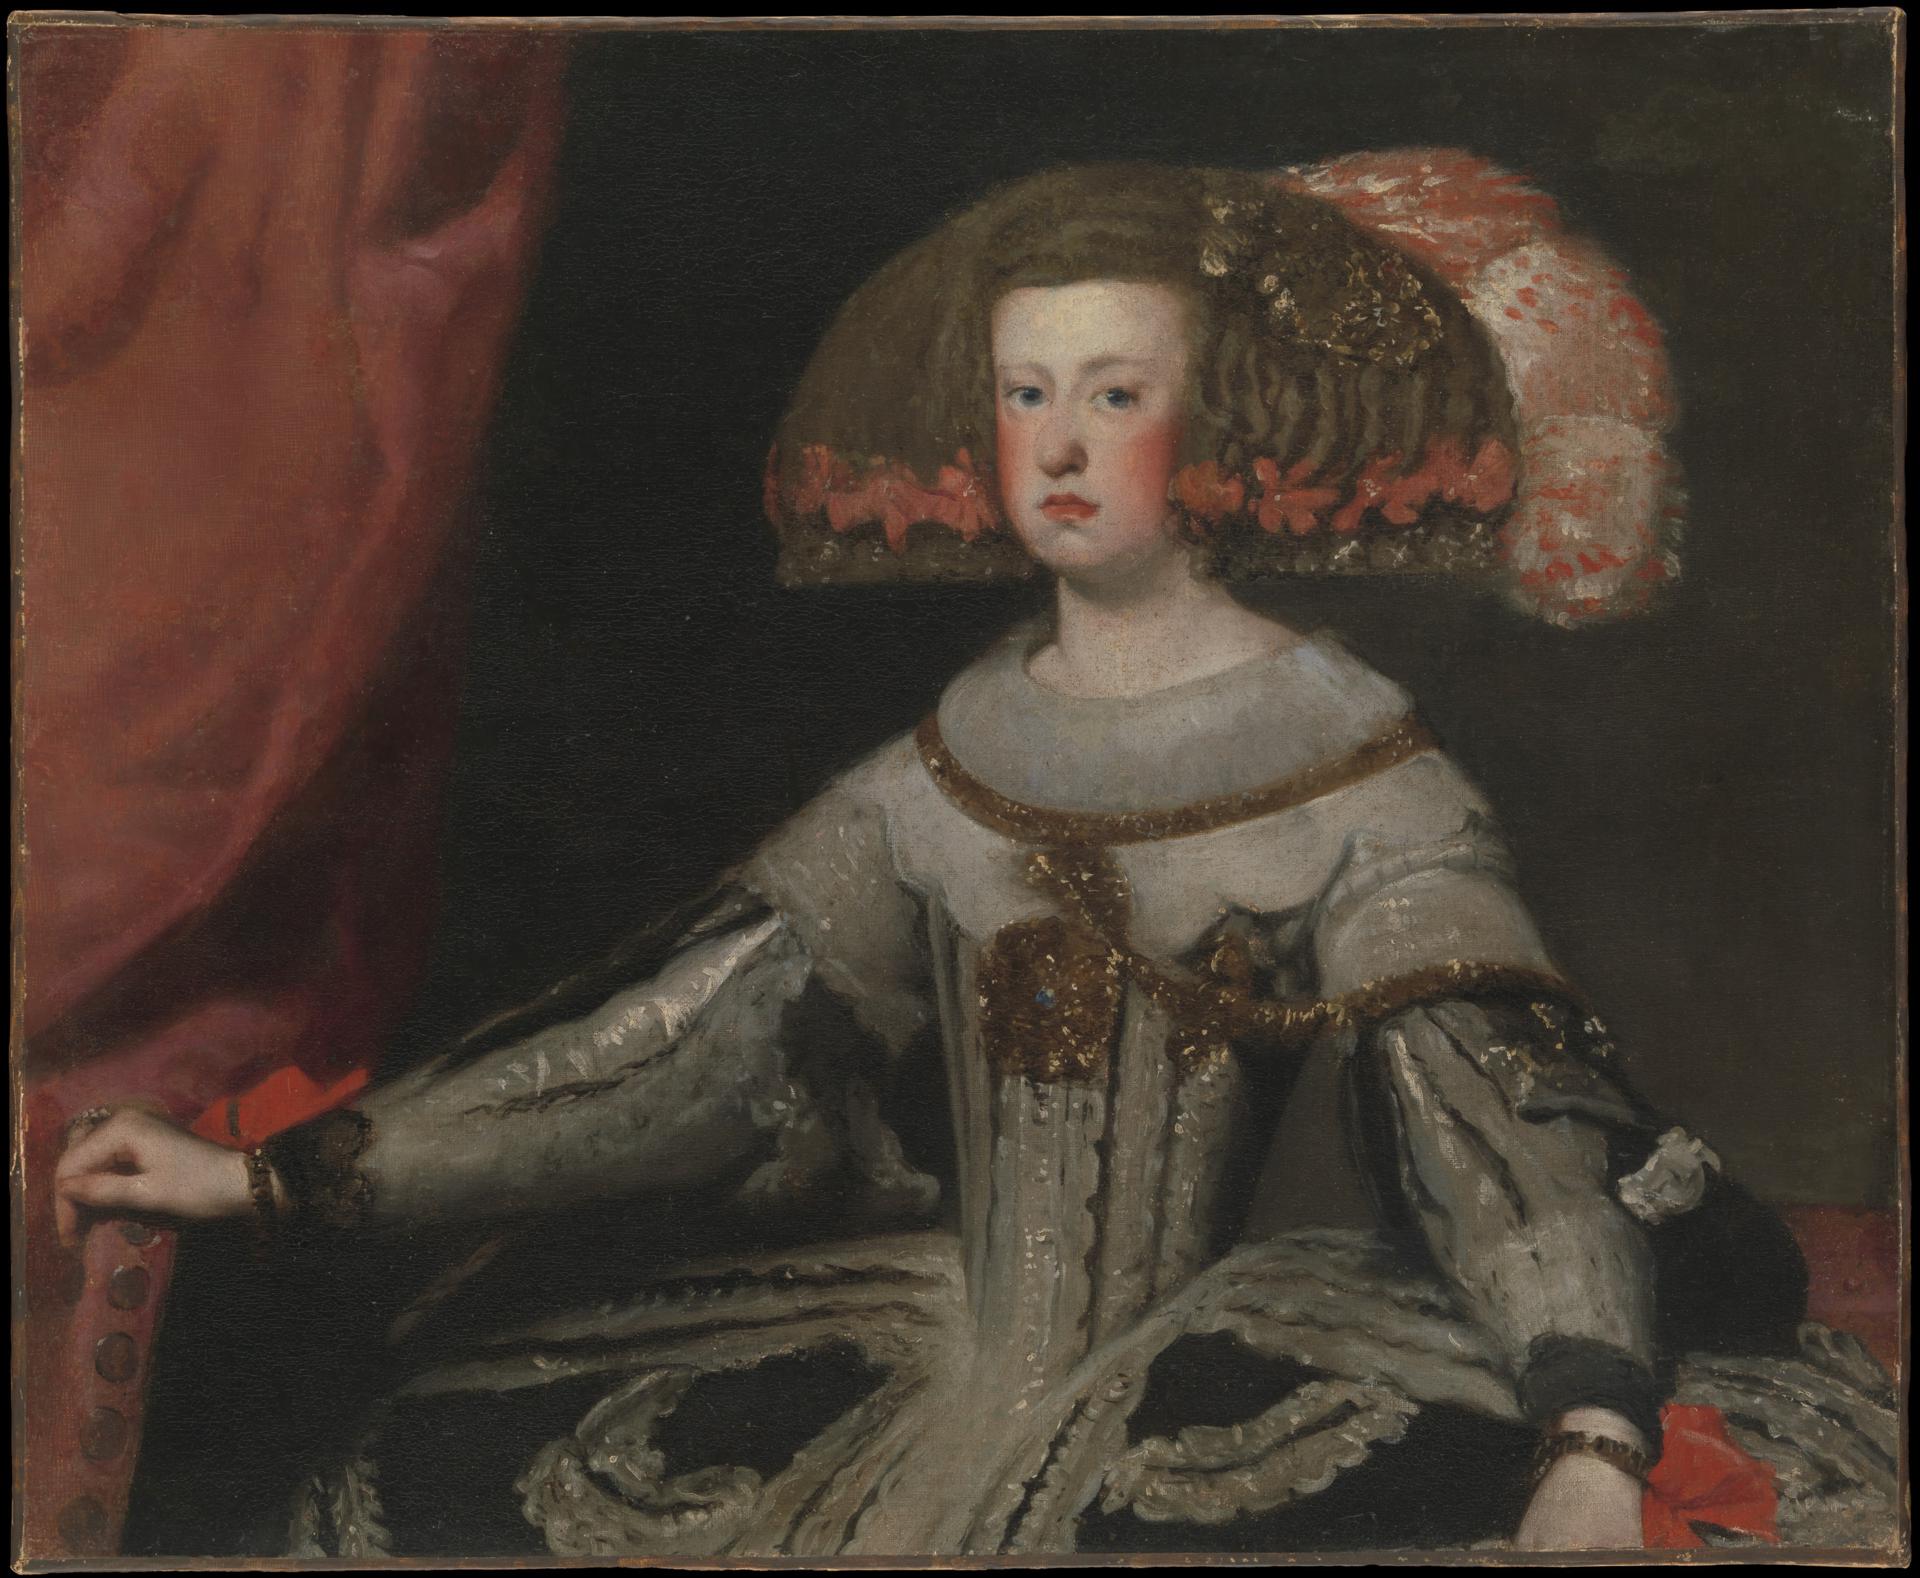 0040_委拉斯开兹_委拉斯开兹绘画作品集-Mariana of Austria 1634–1696  Queen of Spain_3905x3210PX_TIF_150DPI_36_0